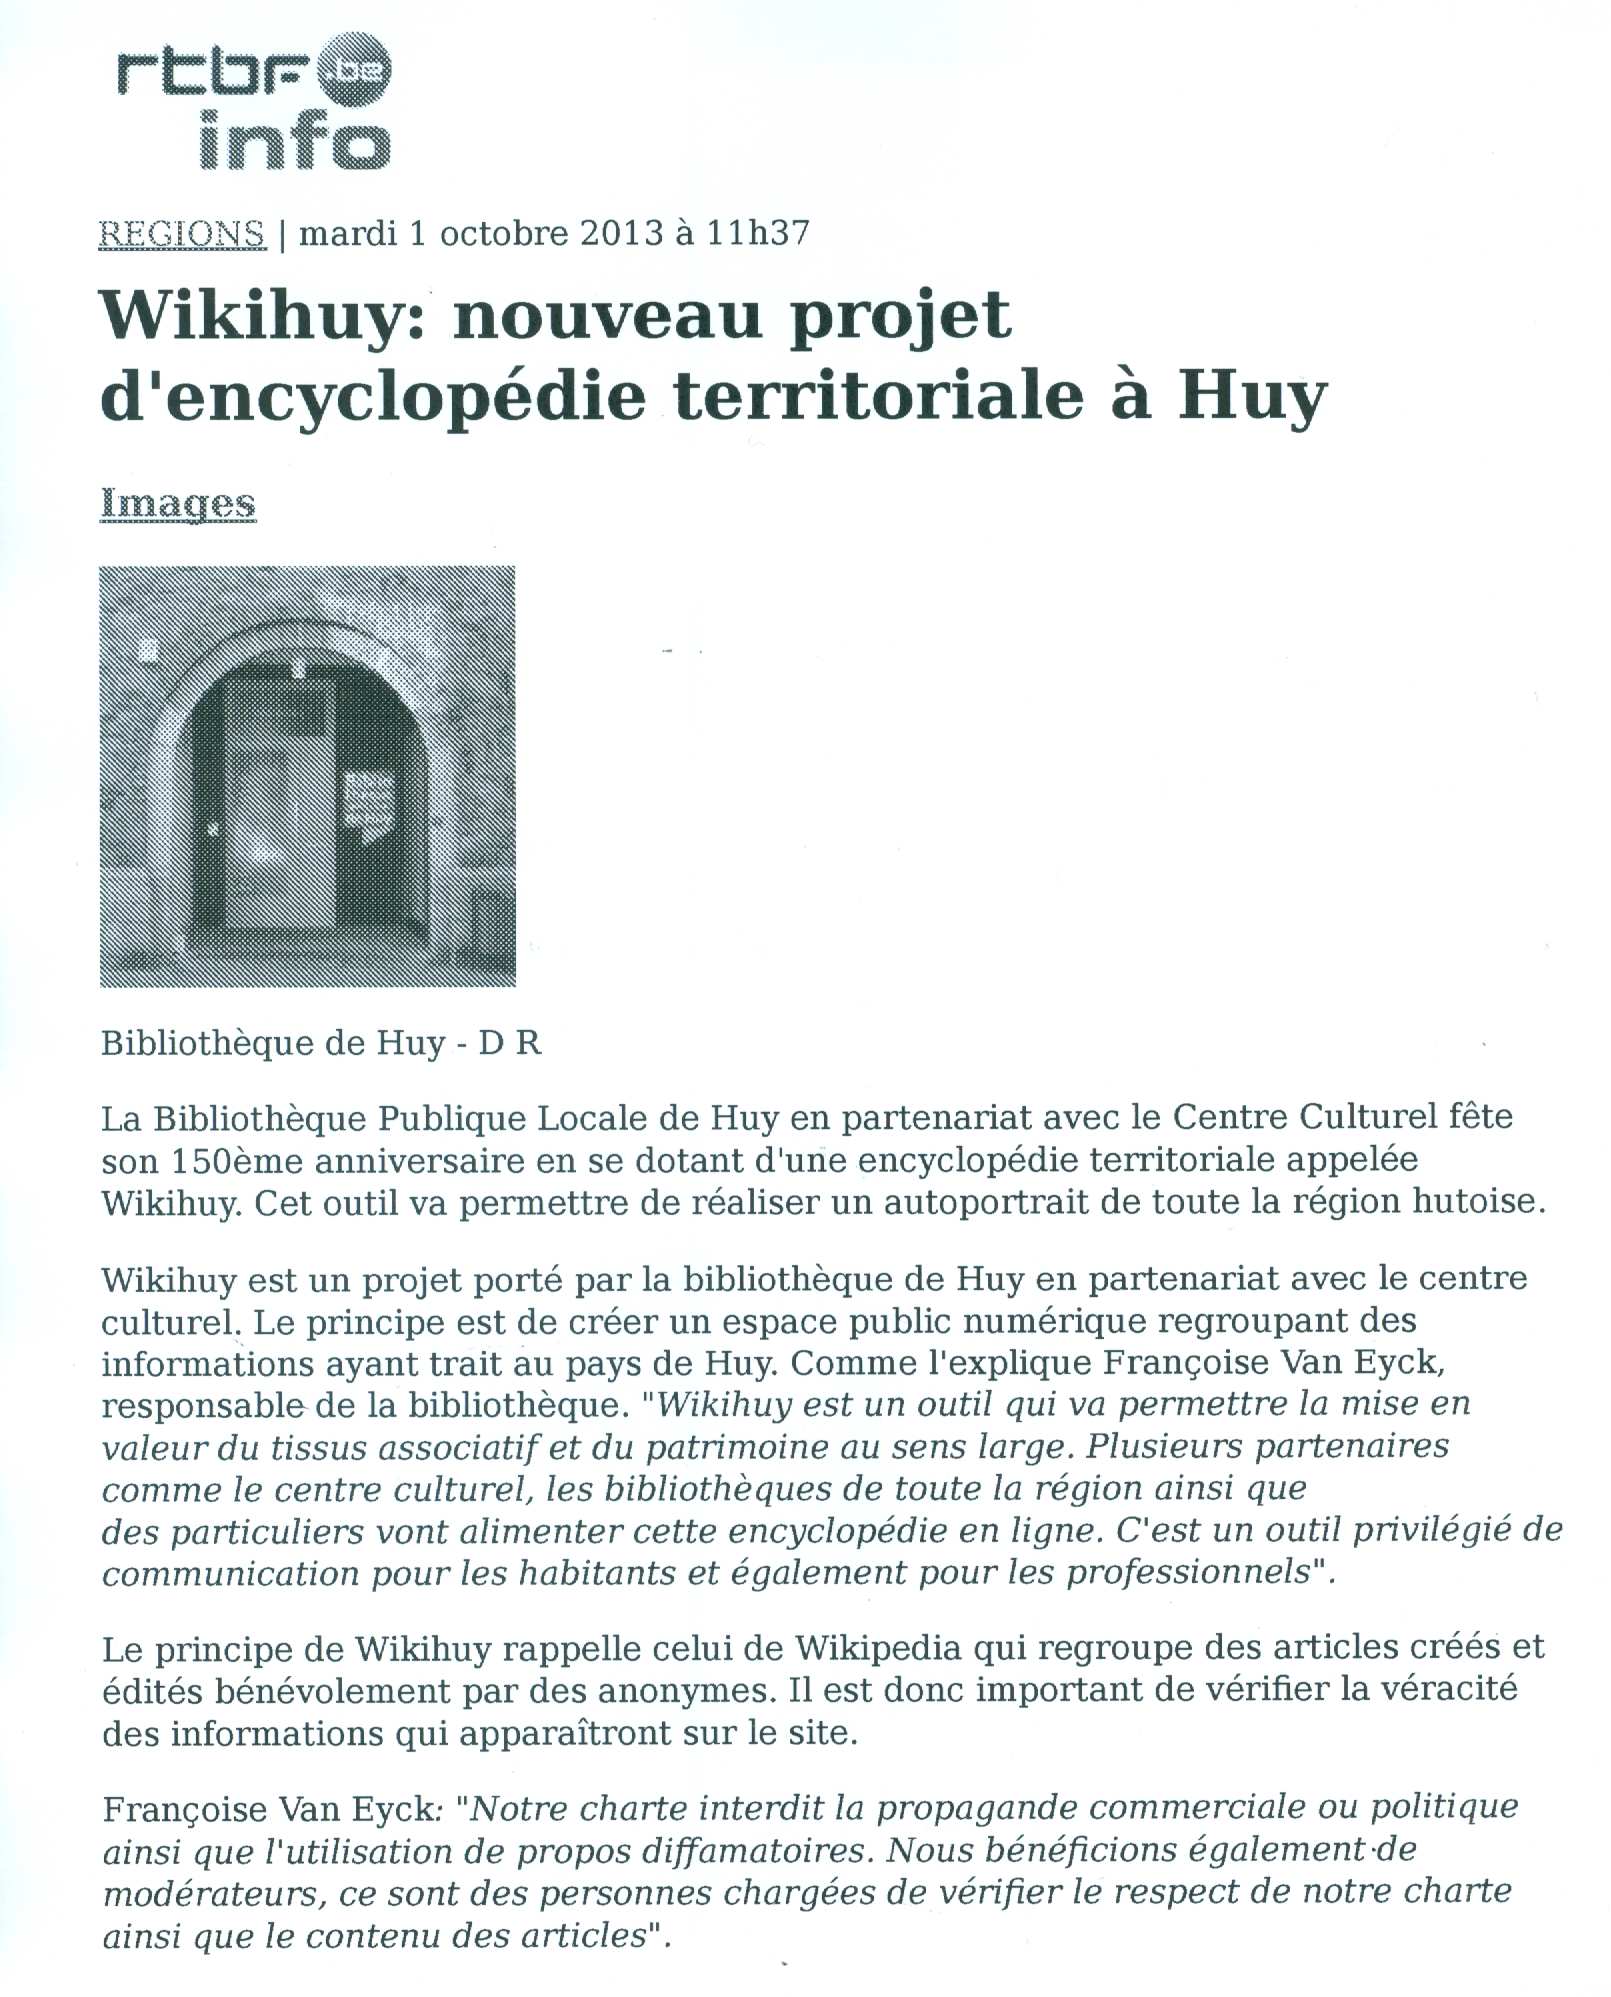 Inauguration du WikiHuy le 01/10/2013 à la Bibliothèque de Huy